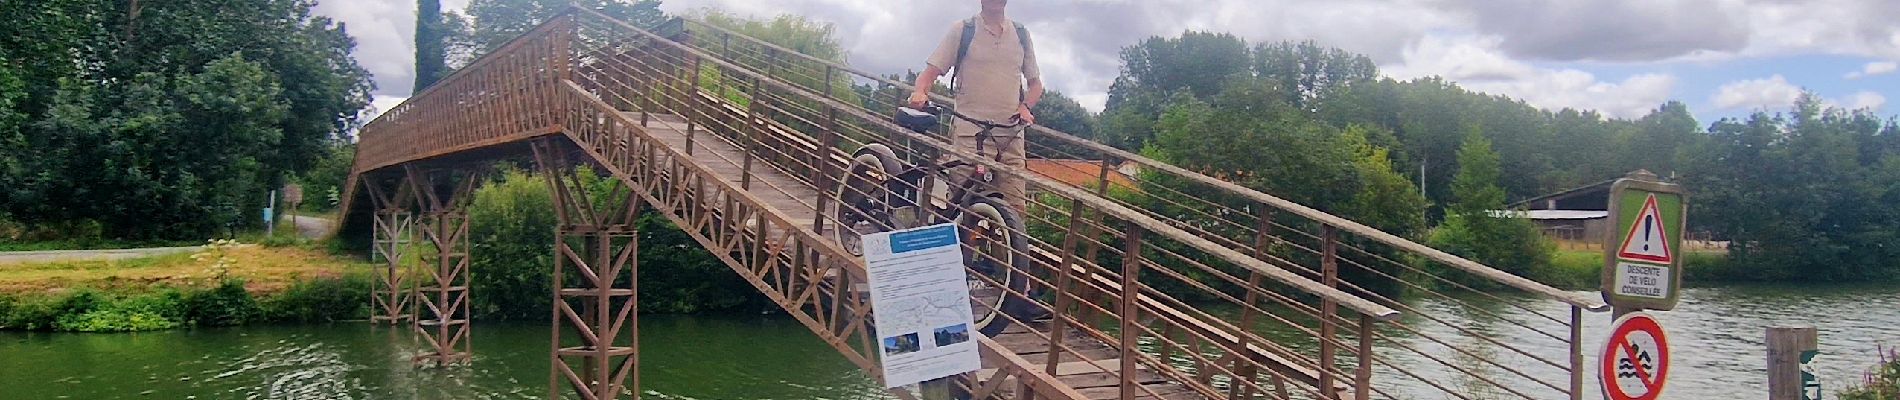 Tour Hybrid-Bike Le Mazeau - Cyclo dans le marais Poitevin - Photo